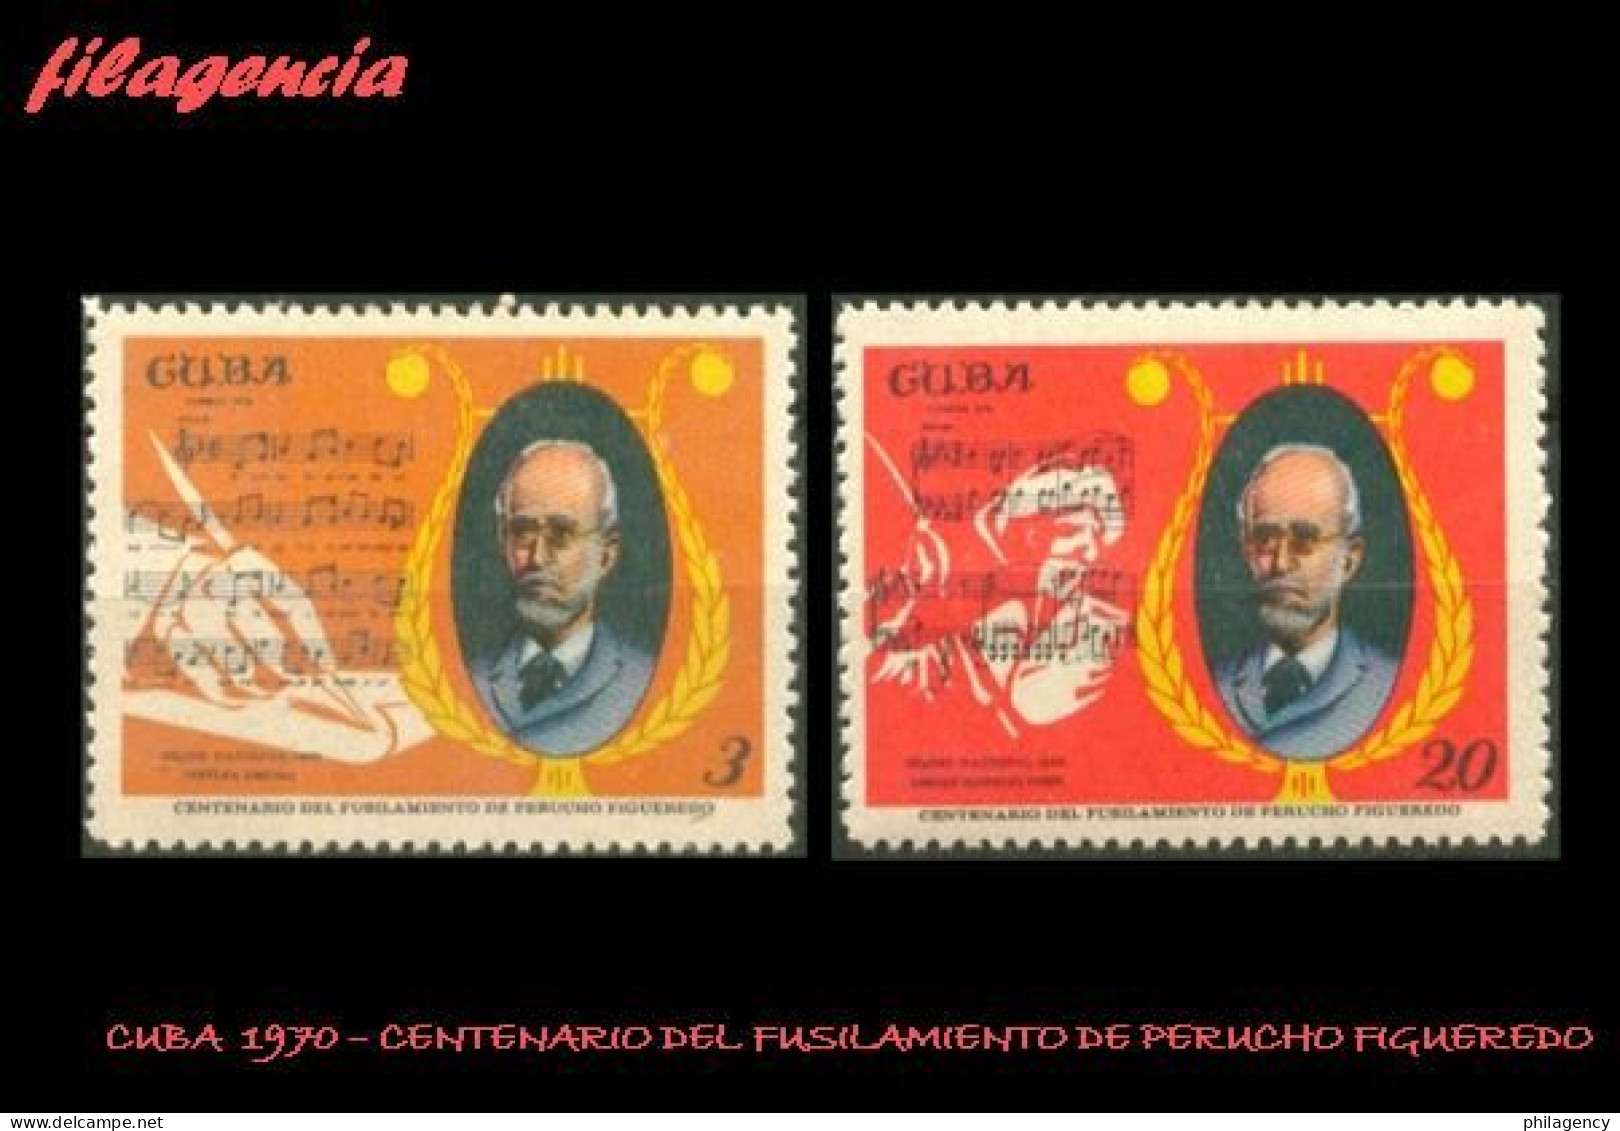 CUBA MINT. 1970-13 CENTENARIO DEL FUSILAMIENTO DE PERUCHO FIGUEREDO - Unused Stamps